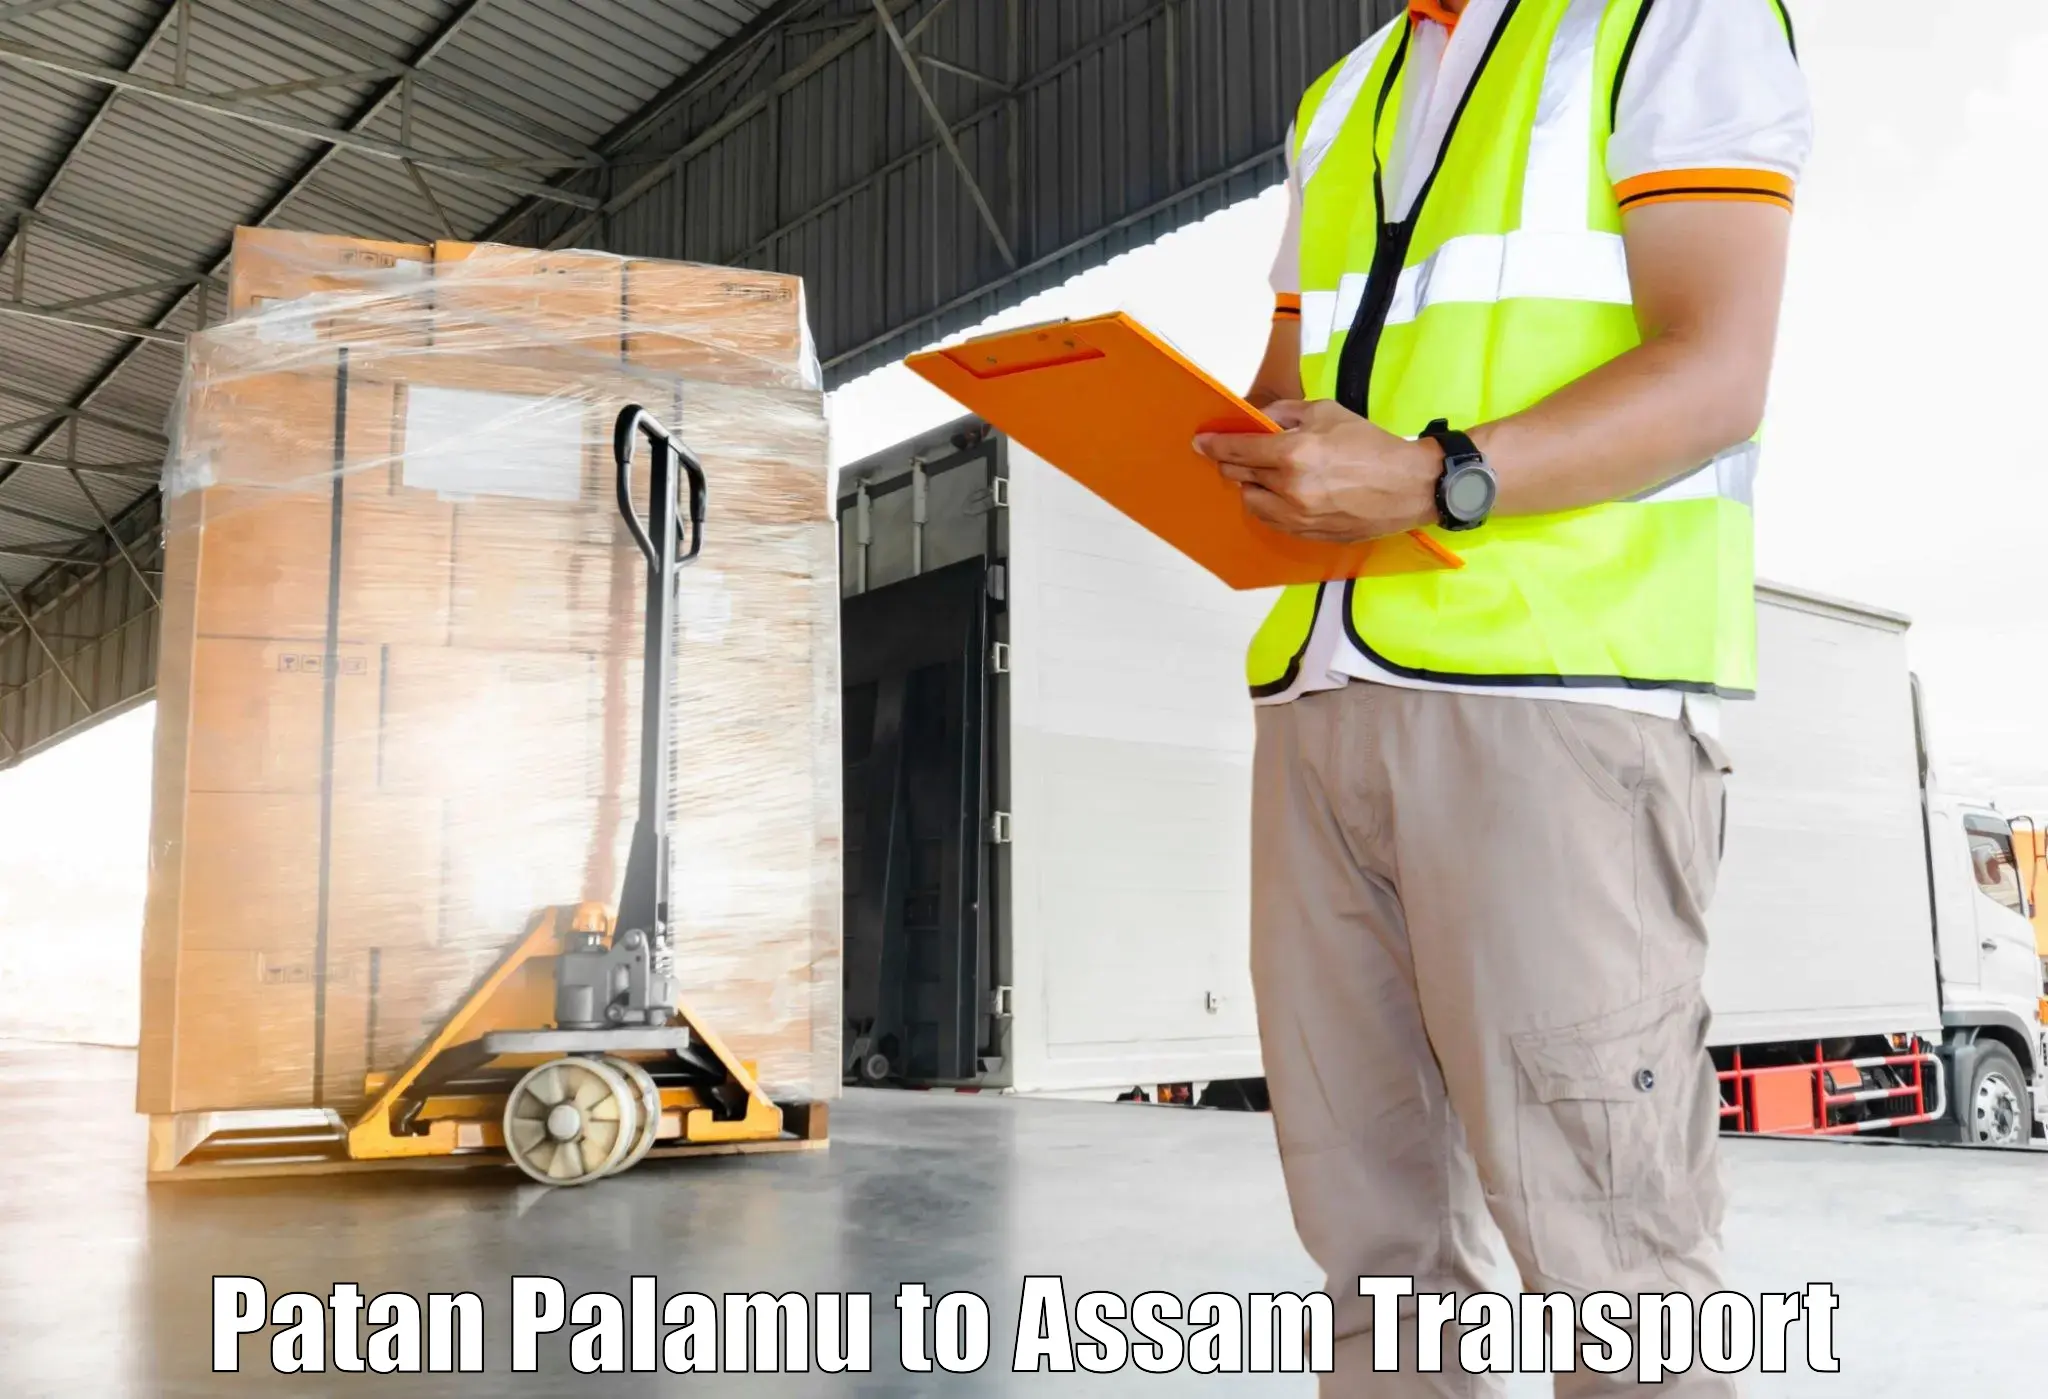 Furniture transport service Patan Palamu to Narayanpur Lakhimpur